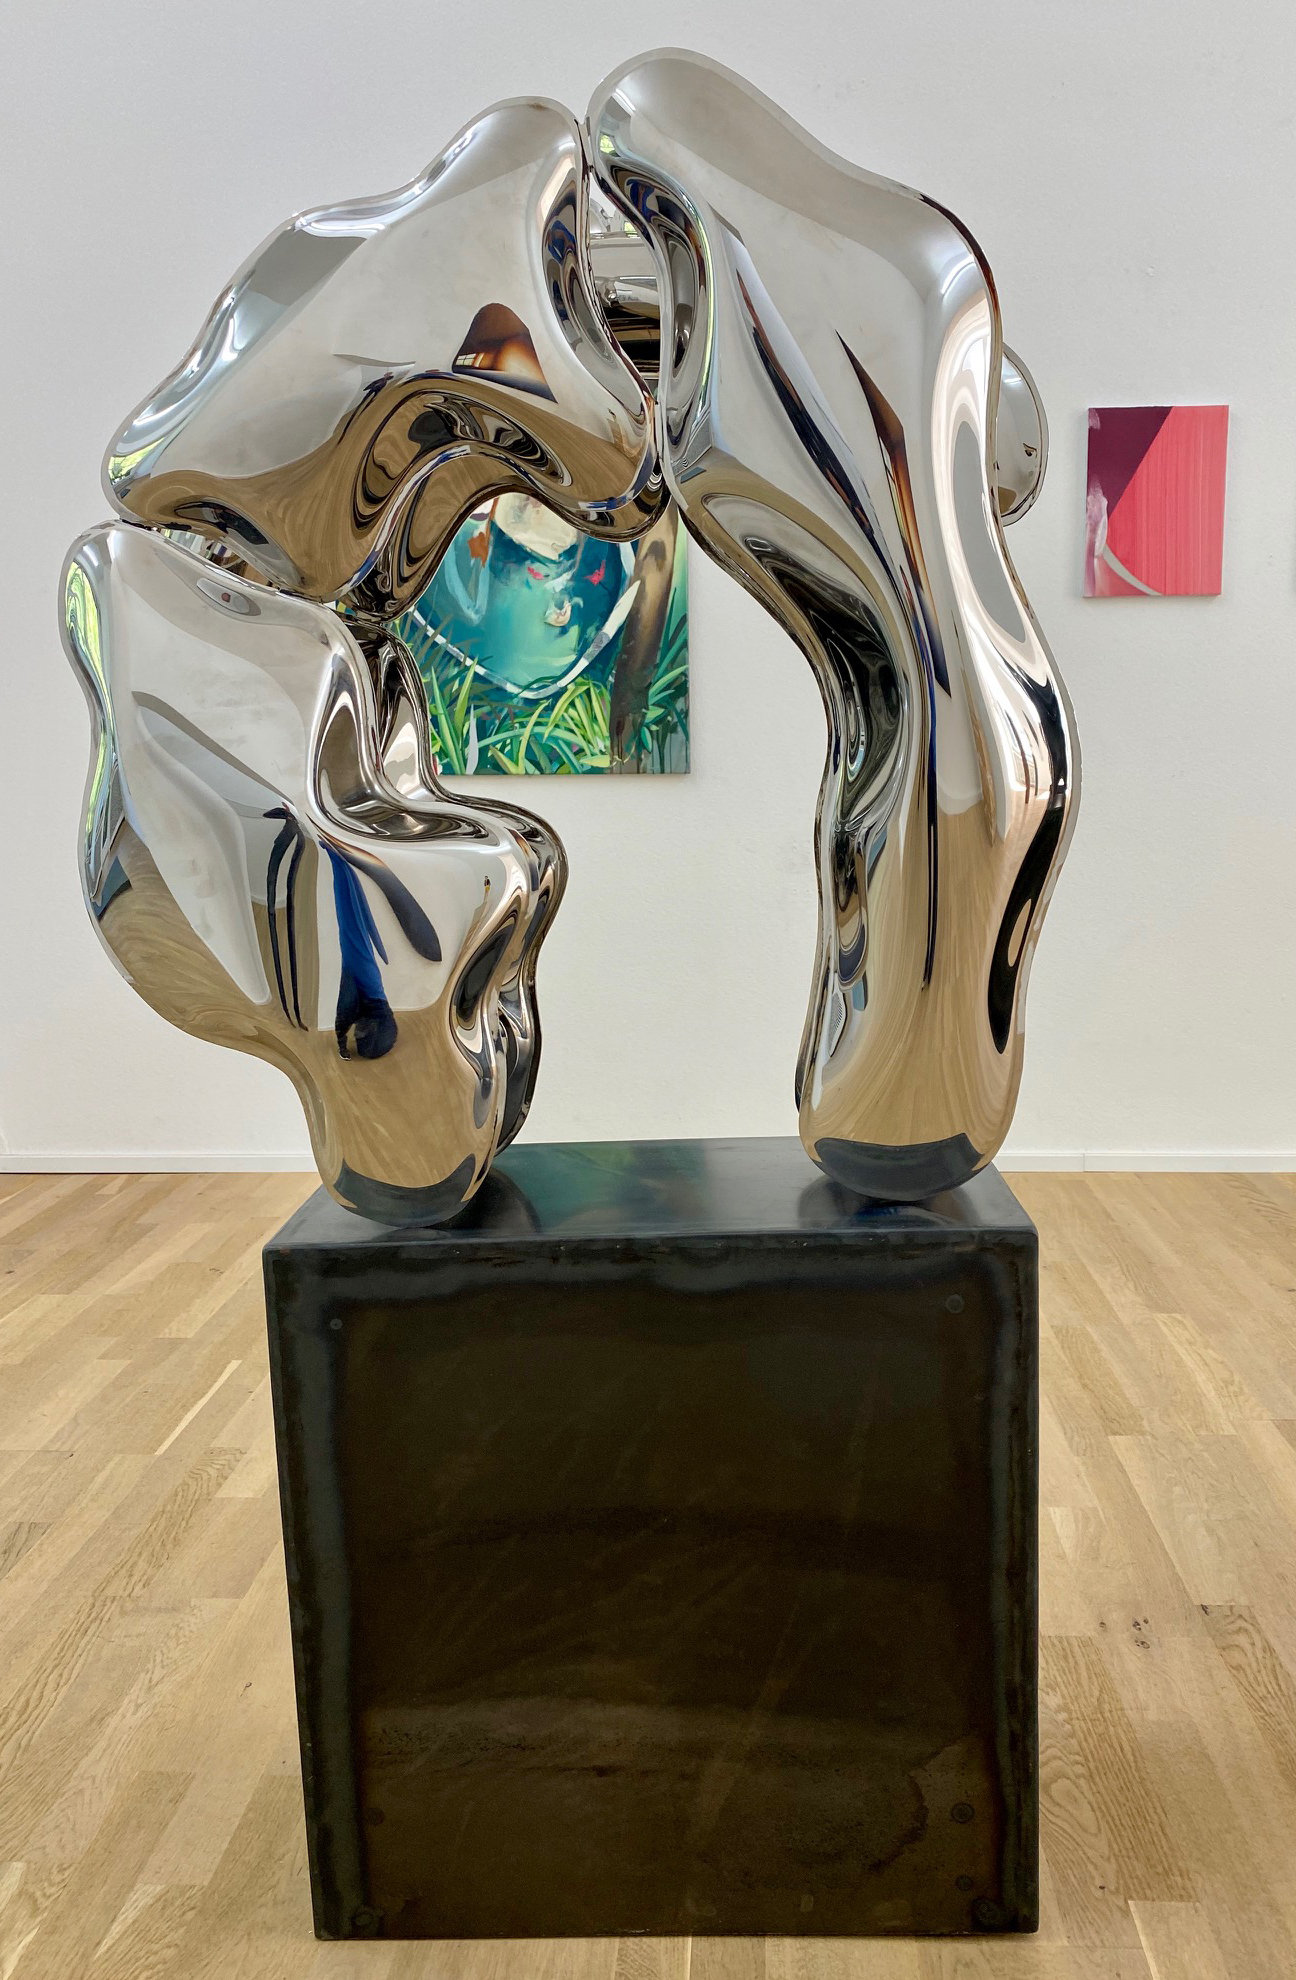 Model Dynastie I - Edelstahl, poliert - 2019 - 80 x 90 x 35 cm 